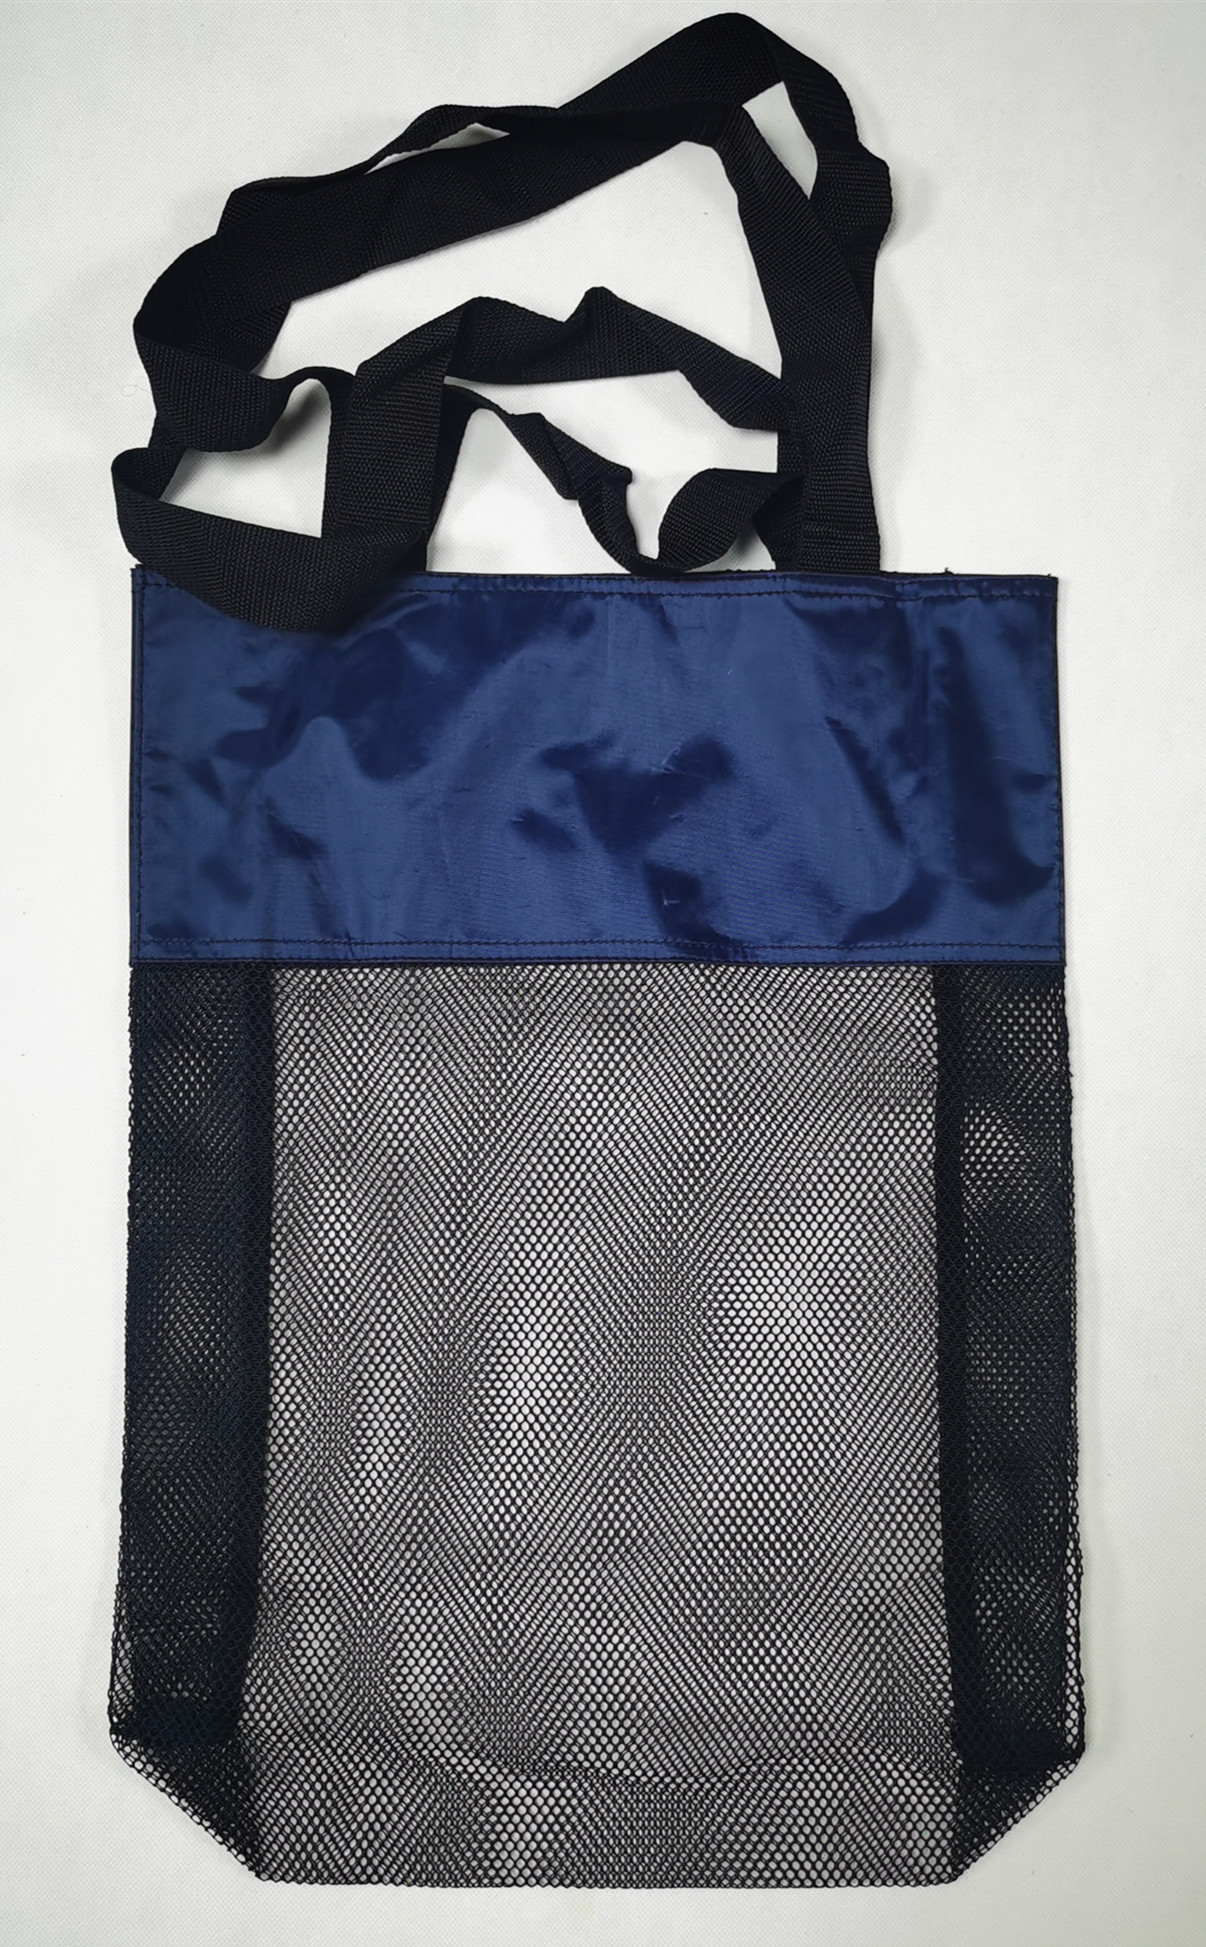 mesh cloth bags instore mesh bags